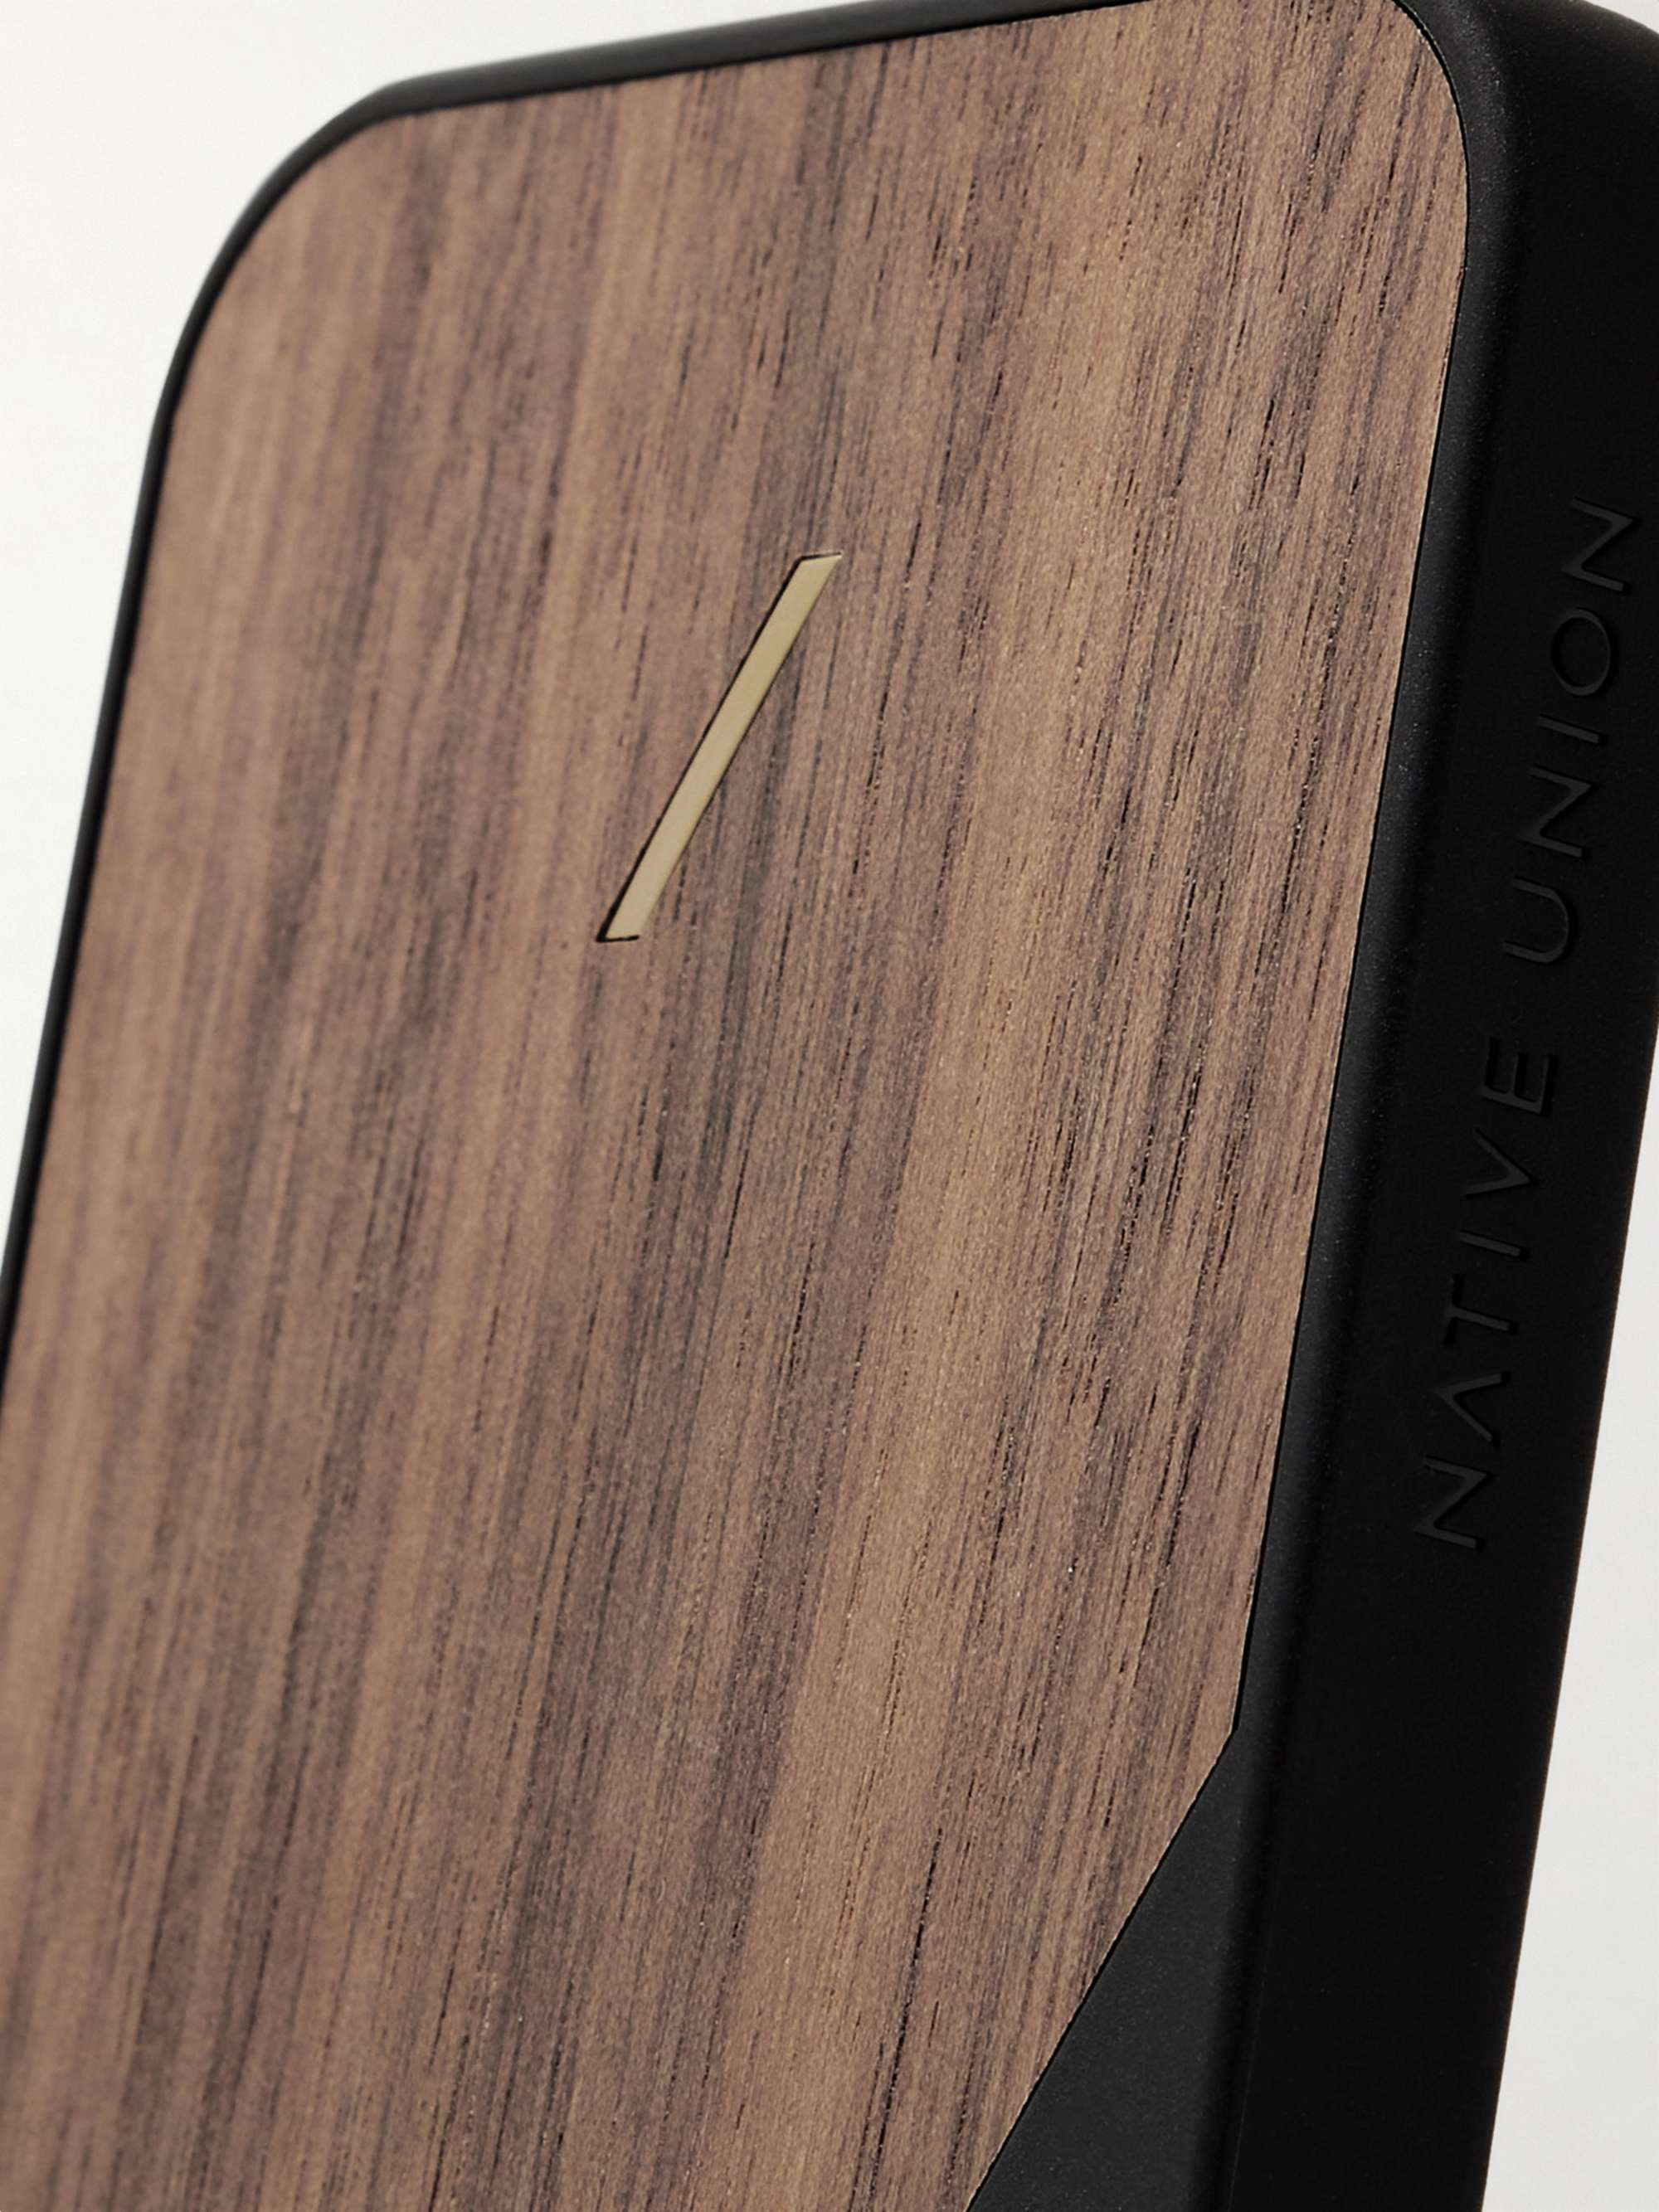 NATIVE UNION Clic Wooden TPU-Trimmed Walnut iPhone 12 Mini Case